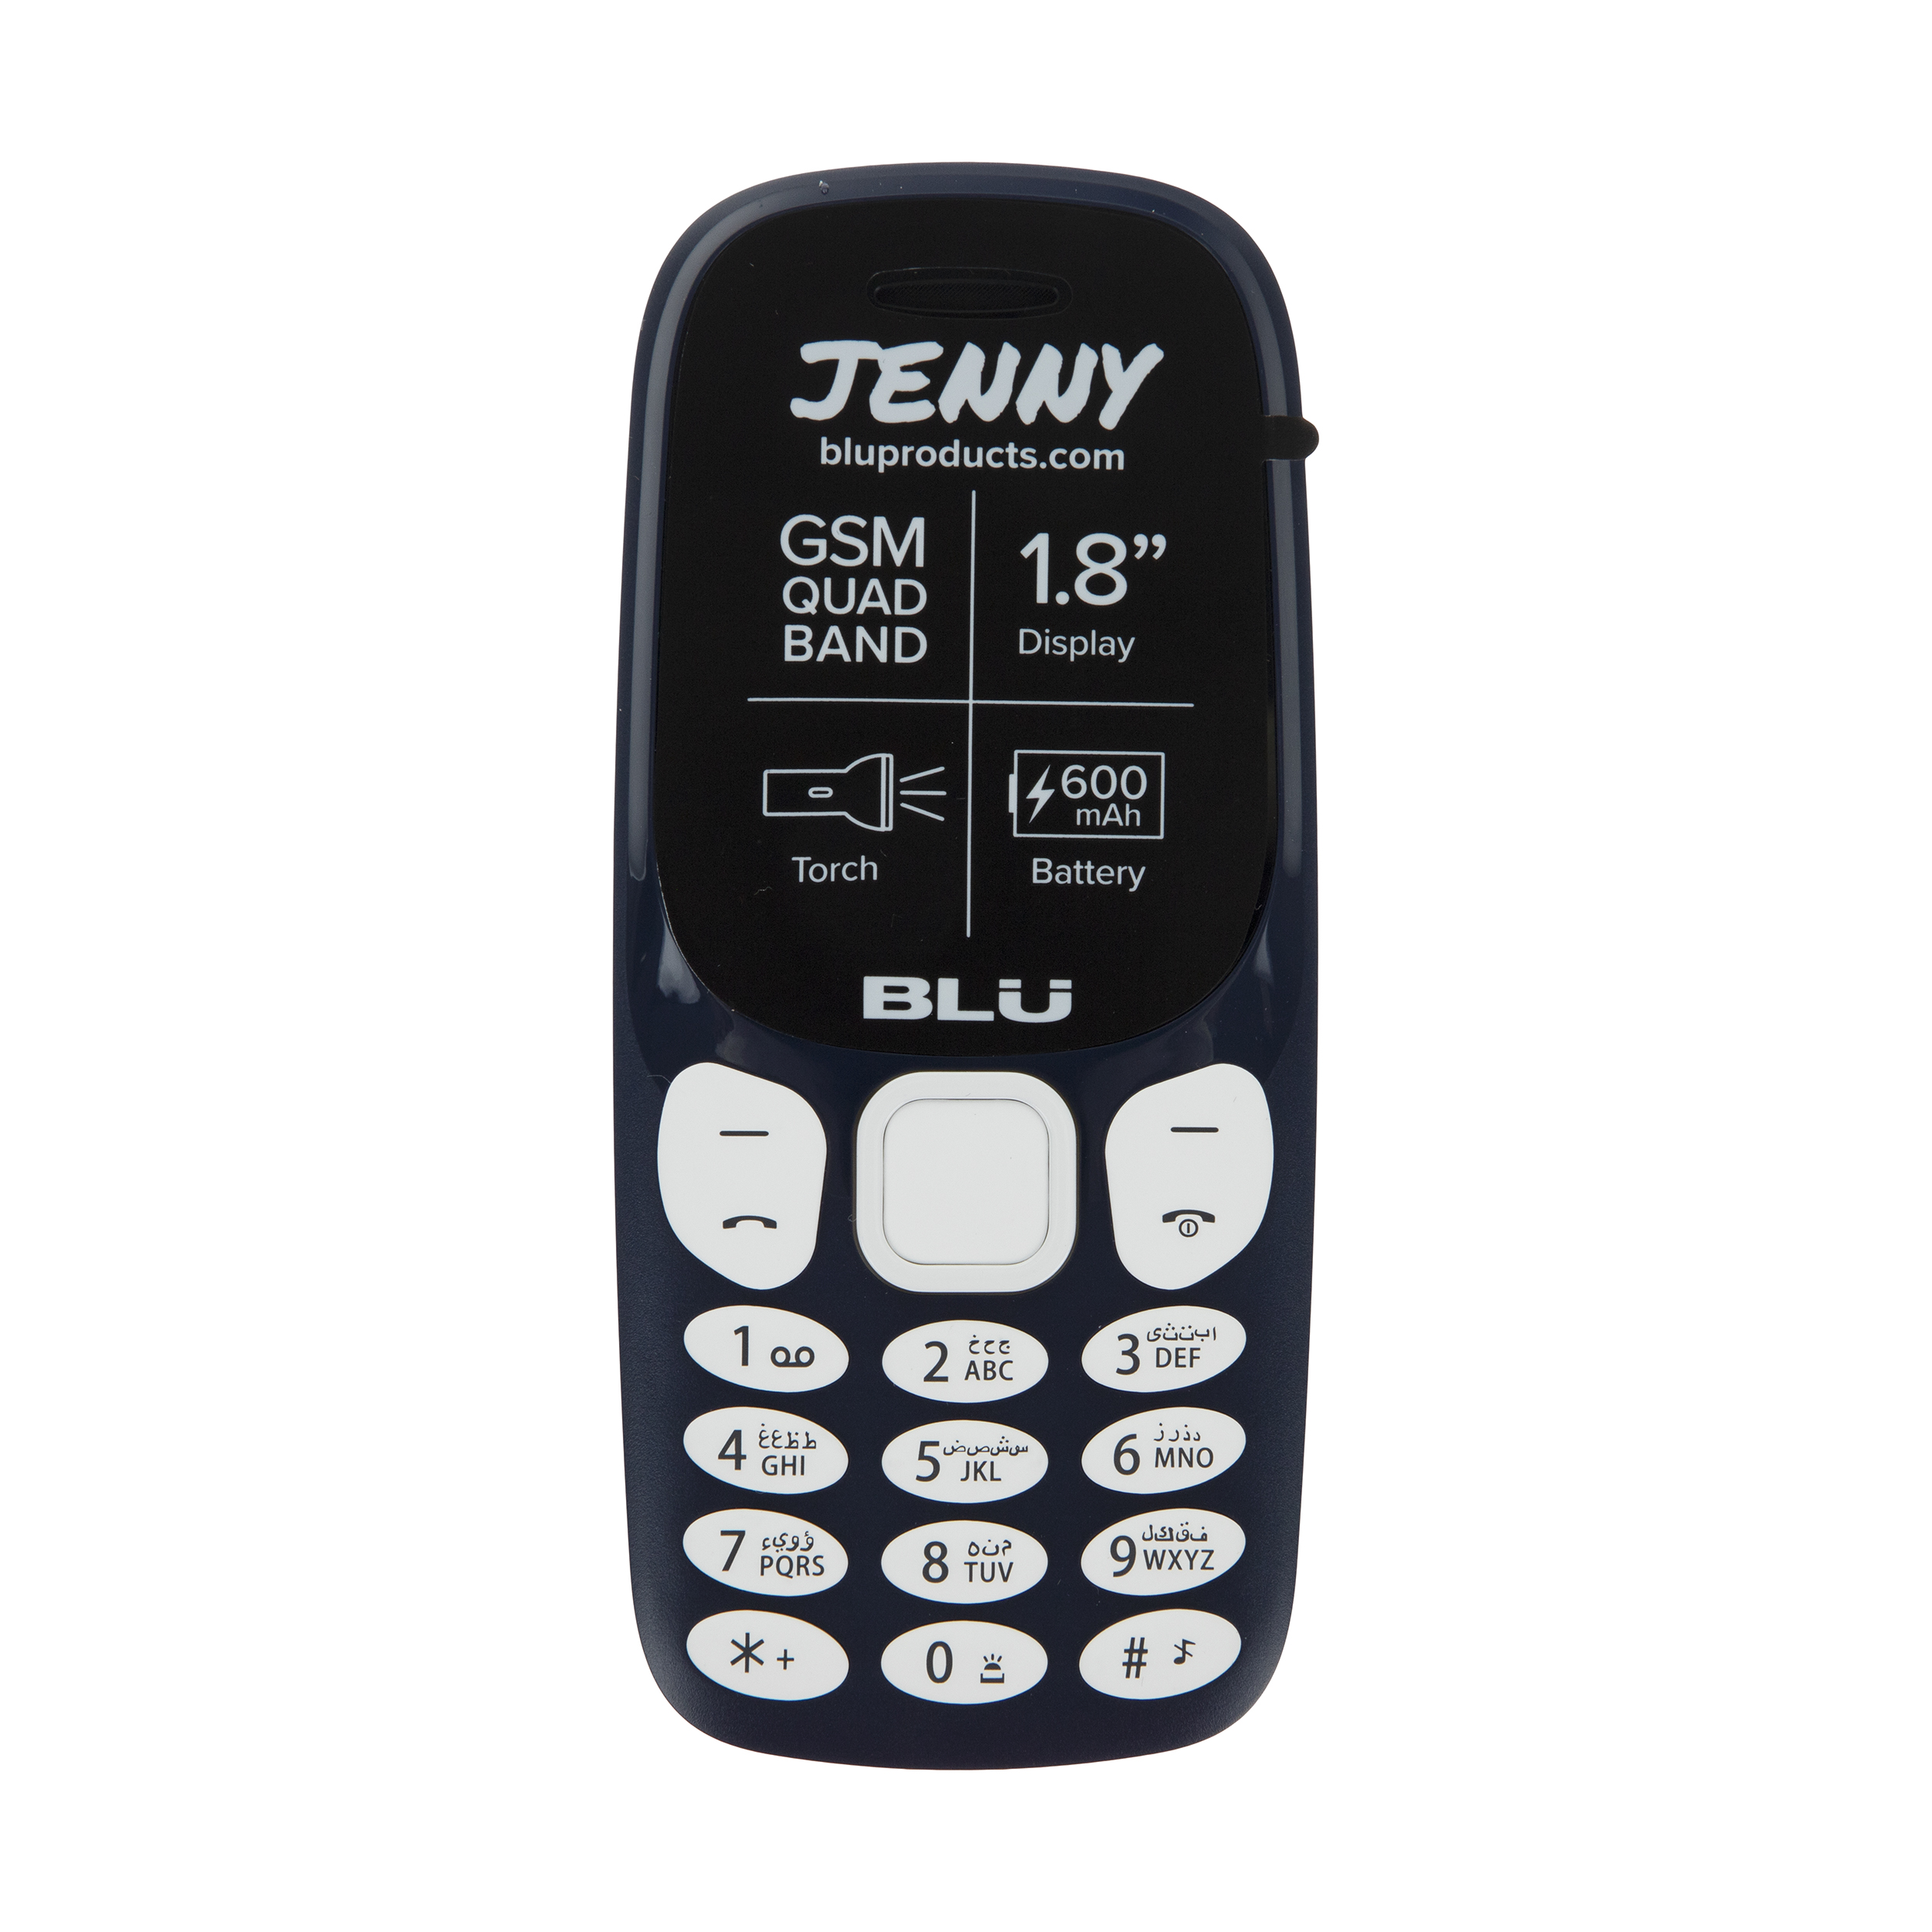 گوشی موبایل بلو مدل Jenny J051 دو سیم کارت